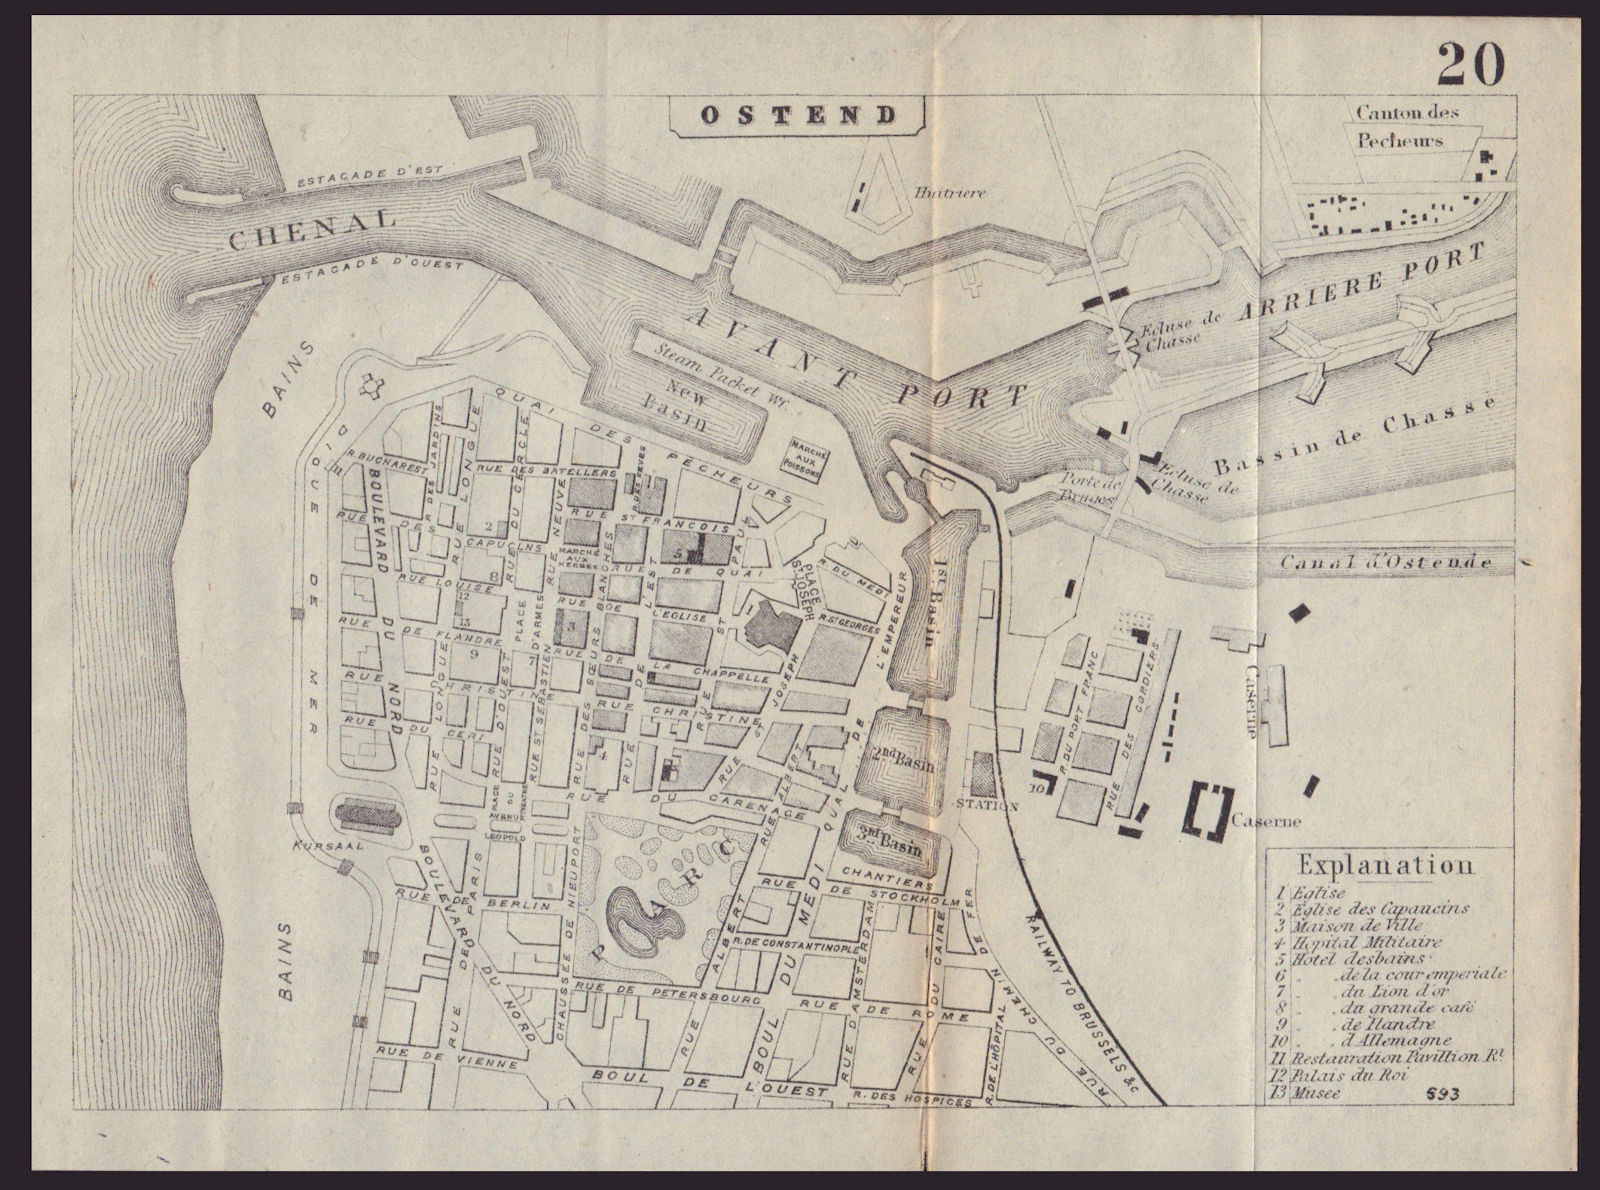 OSTEND OOSTENDE OSTENDE antique town plan city map. Belgium. BRADSHAW 1893